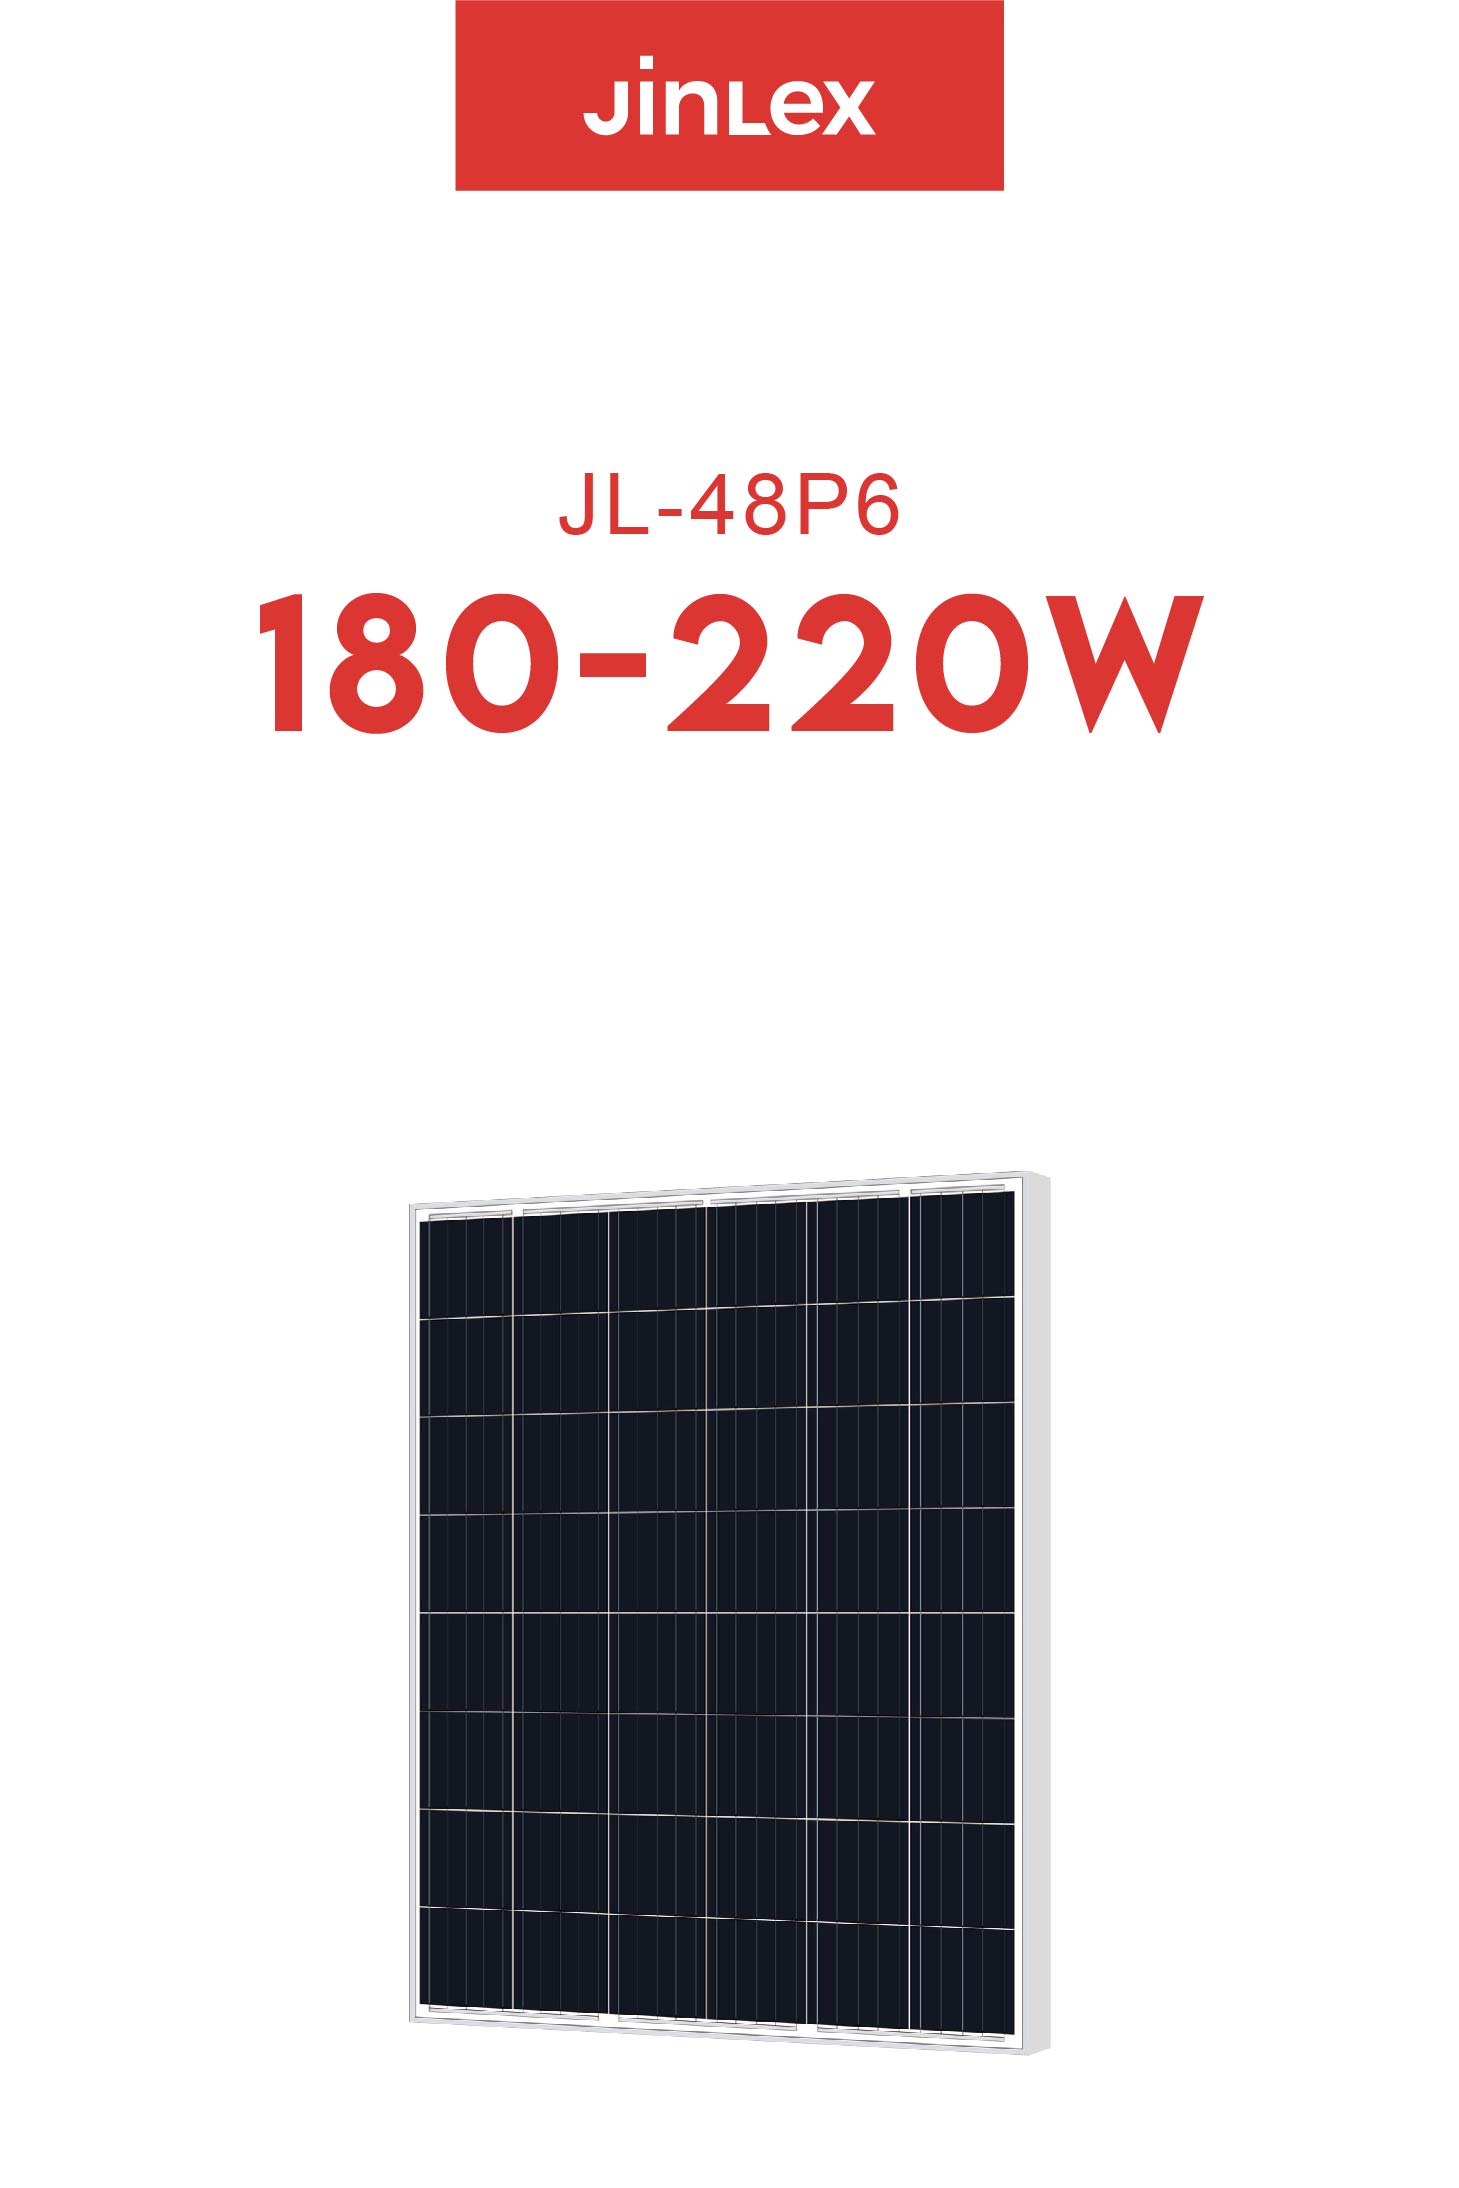 JL(180~220)-48P6